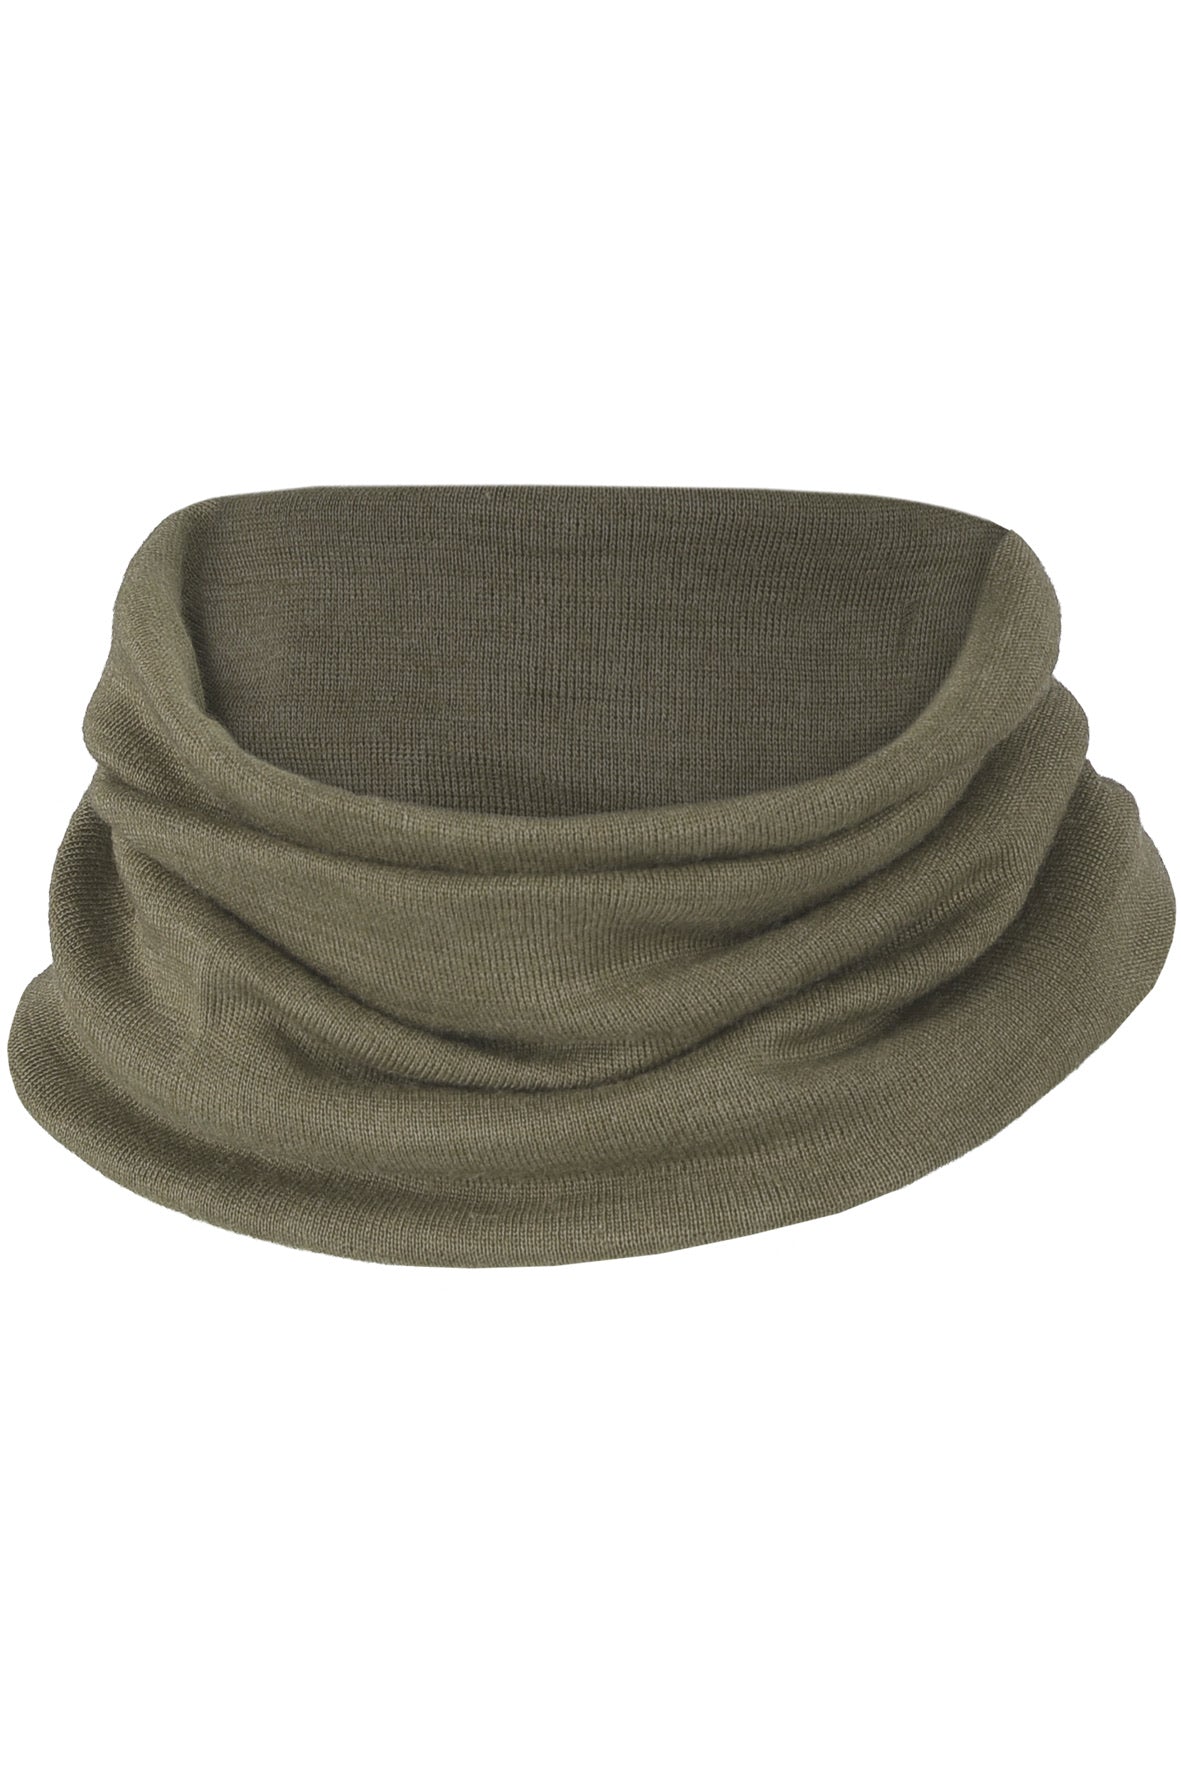 Engel silk wool loop scarf in olive